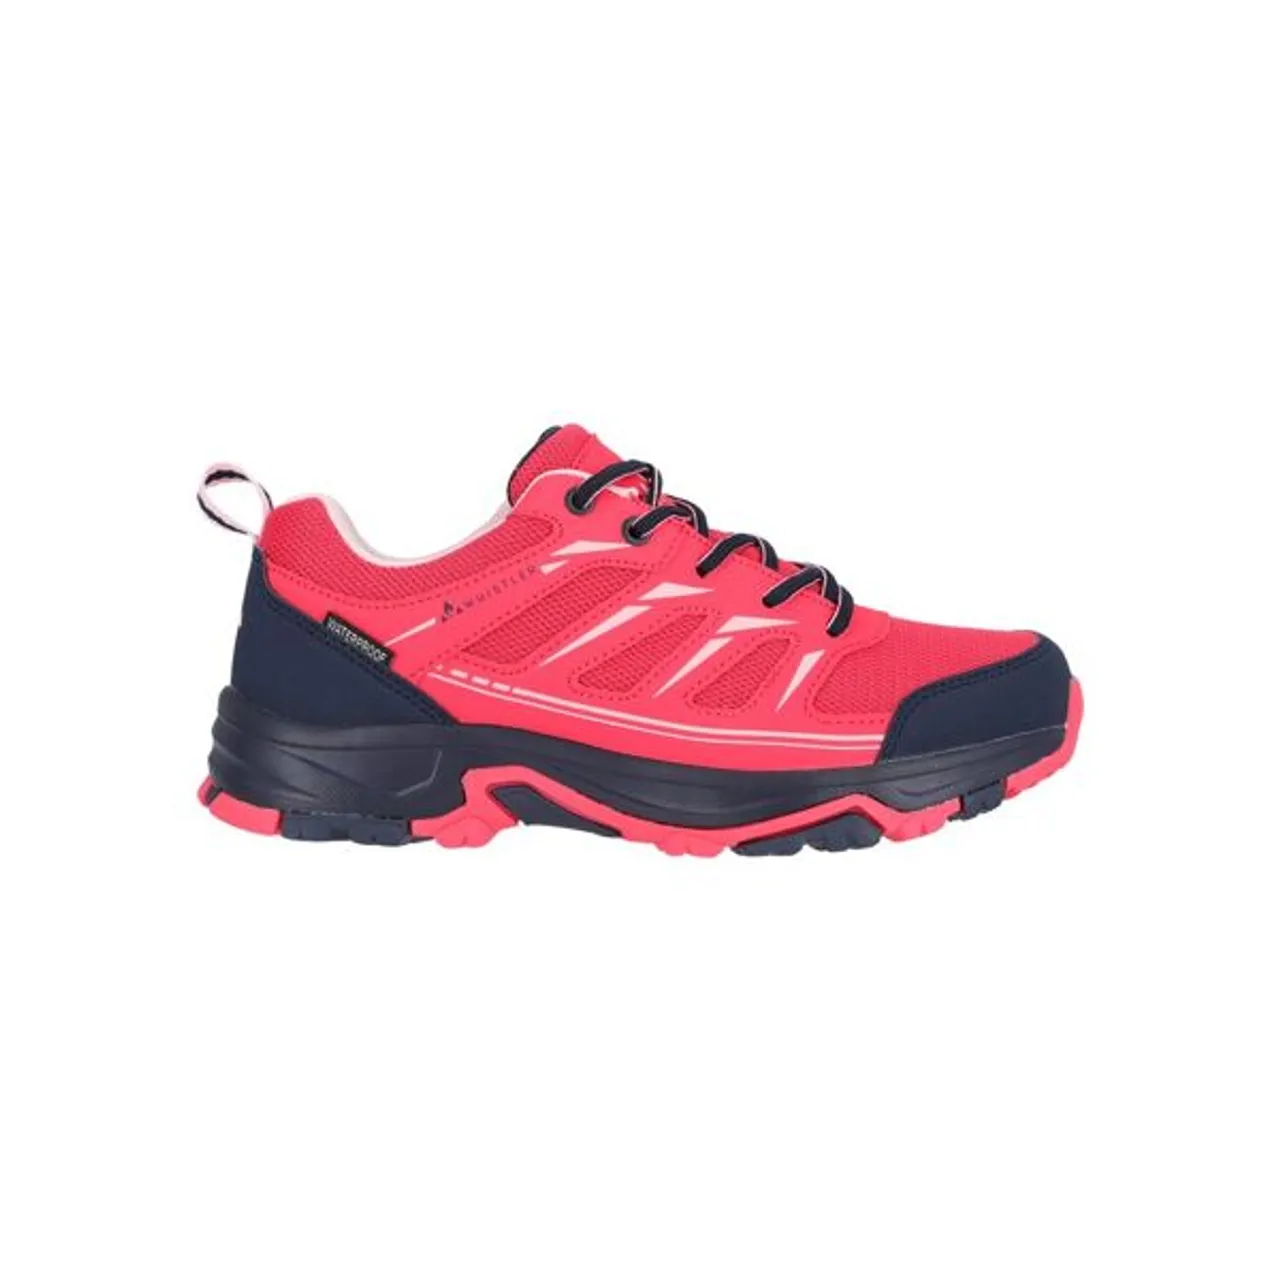 Outdoorschuh WHISTLER "Haksa" Gr. 41, rot (rosa) Schuhe Damen in wasserdichter Qualität